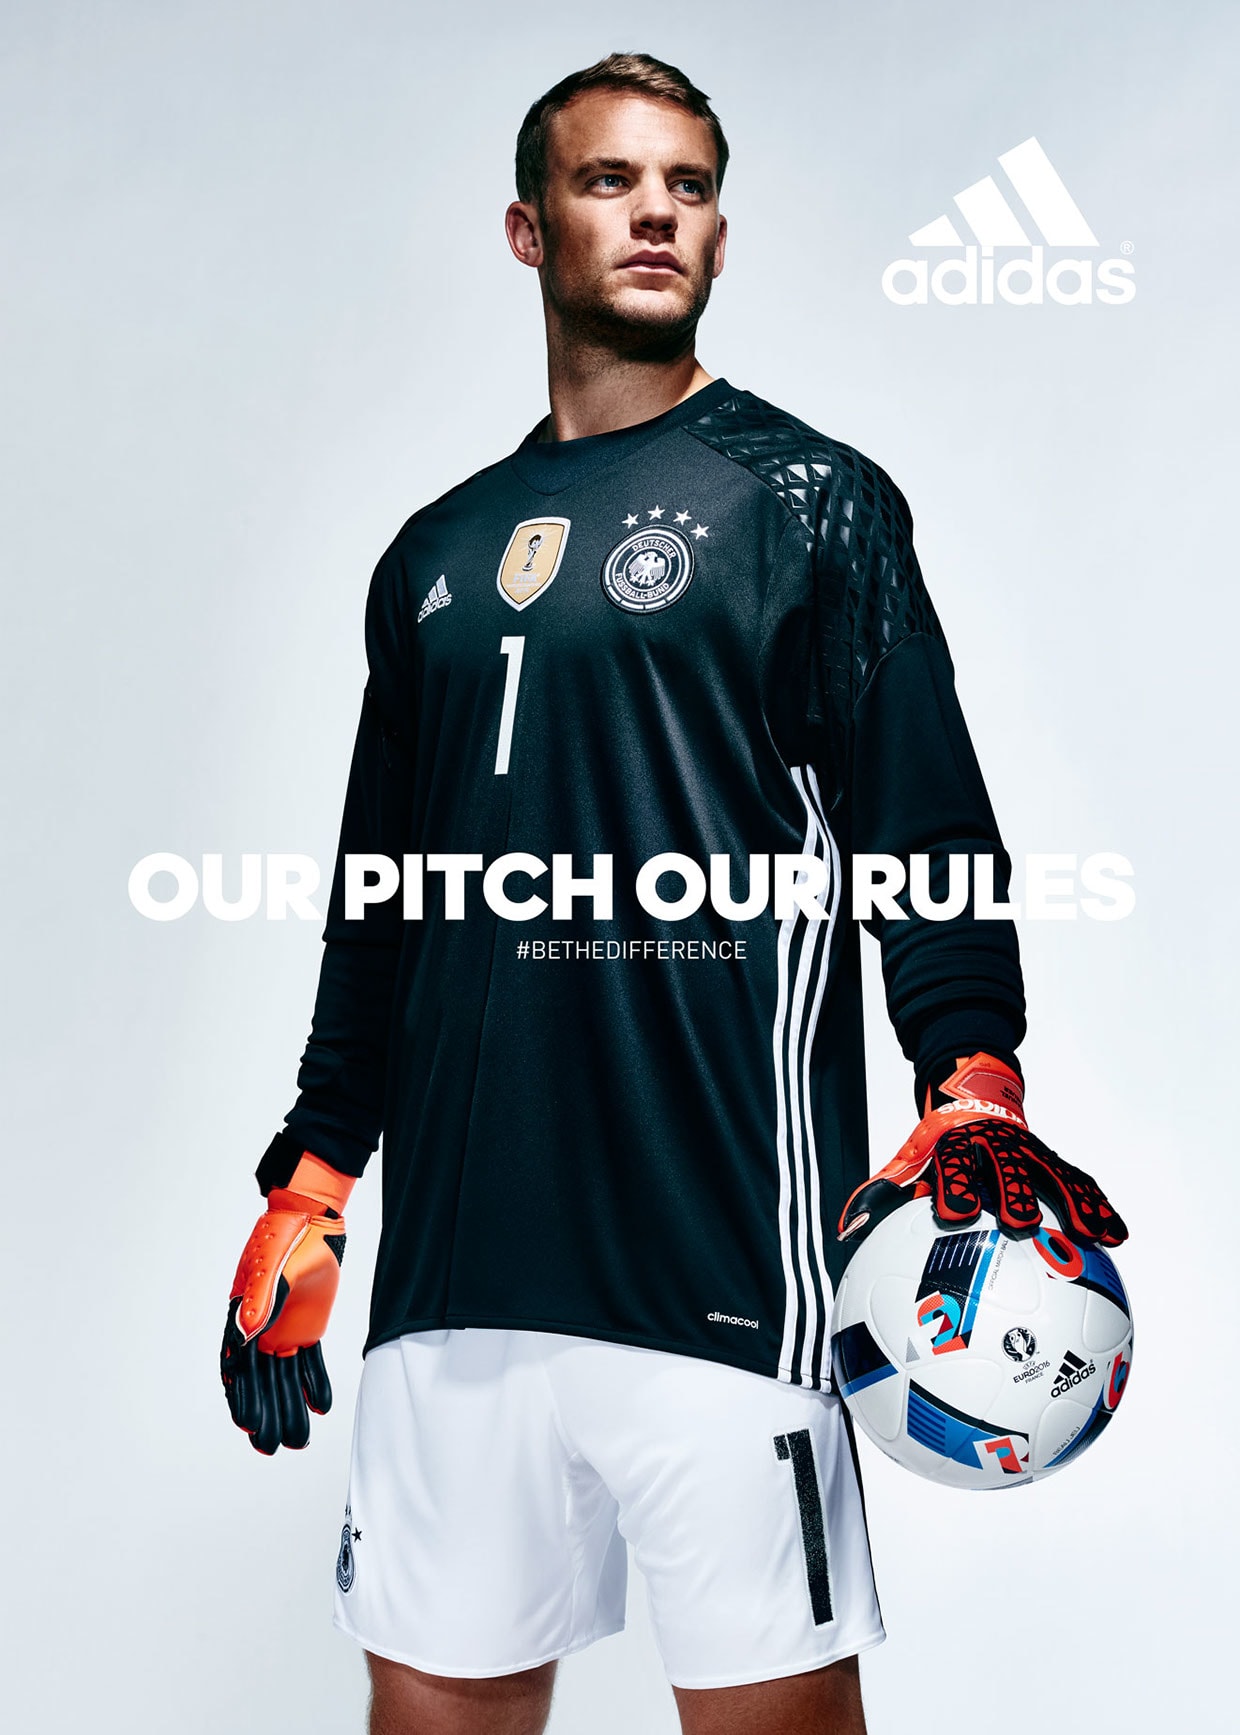 ドイツ代表 Euro2016モデルユニ姿の広告が登場 ヨアヒム レー部